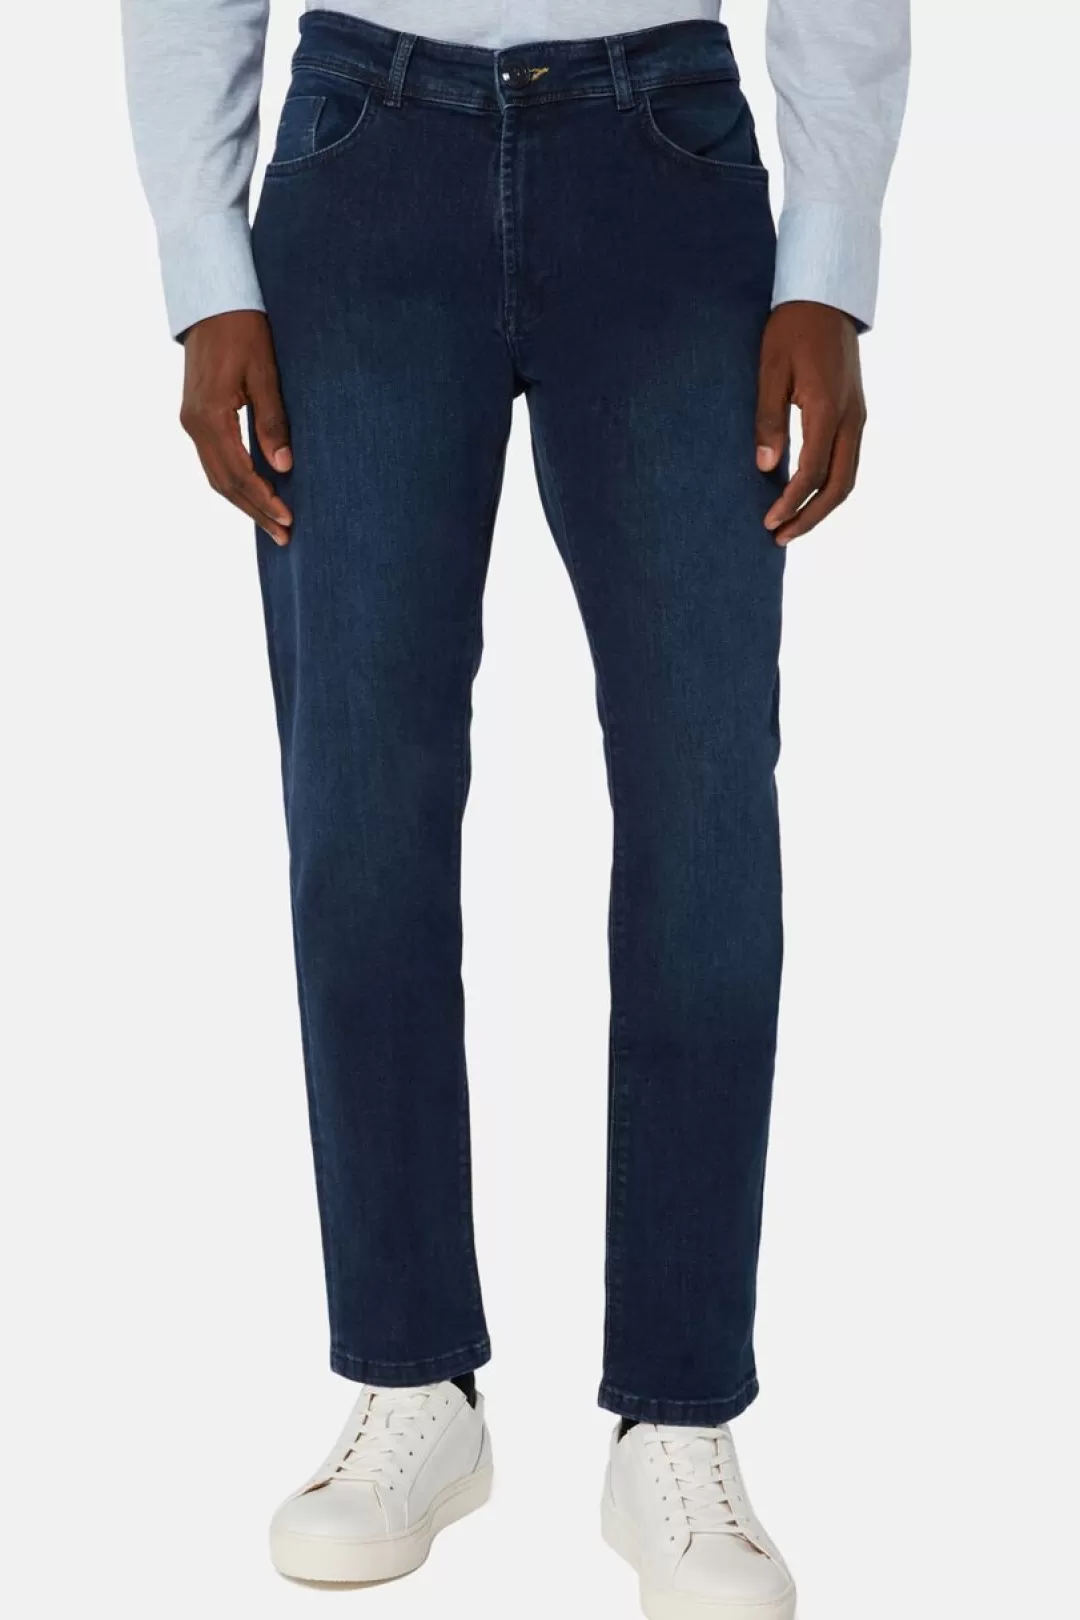 Boggi Jeans In Denim Elasticizzato Blu Scuro Indaco Scuro Flash Sale